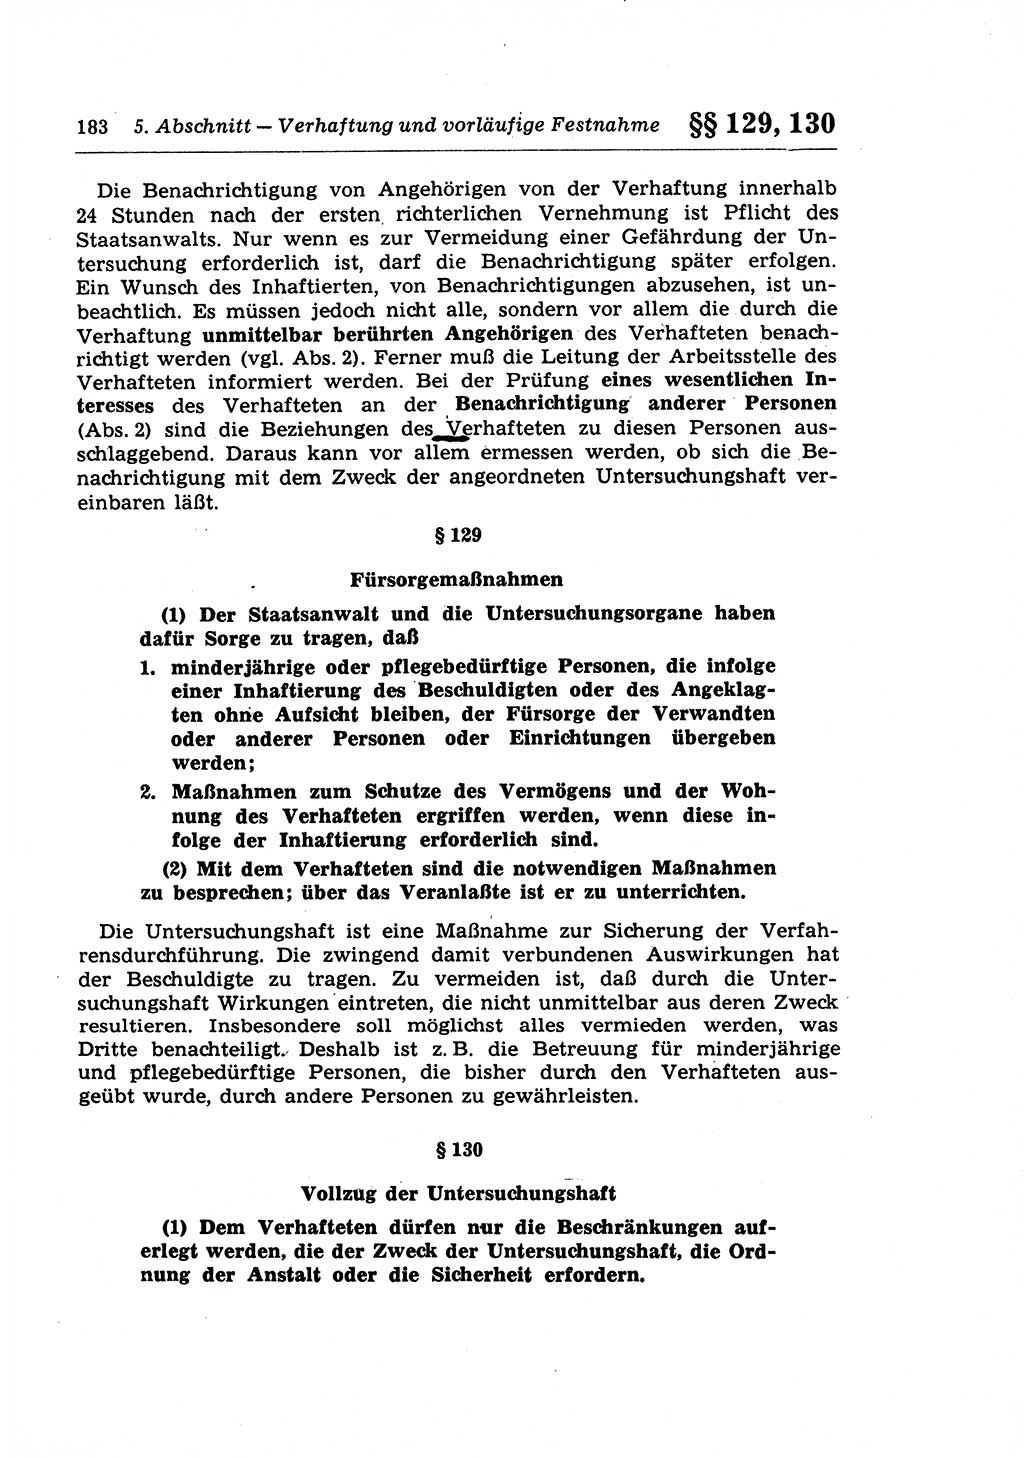 Strafprozeßrecht der DDR (Deutsche Demokratische Republik), Lehrkommentar zur Strafprozeßordnung (StPO) 1968, Seite 183 (Strafprozeßr. DDR Lehrkomm. StPO 19688, S. 183)